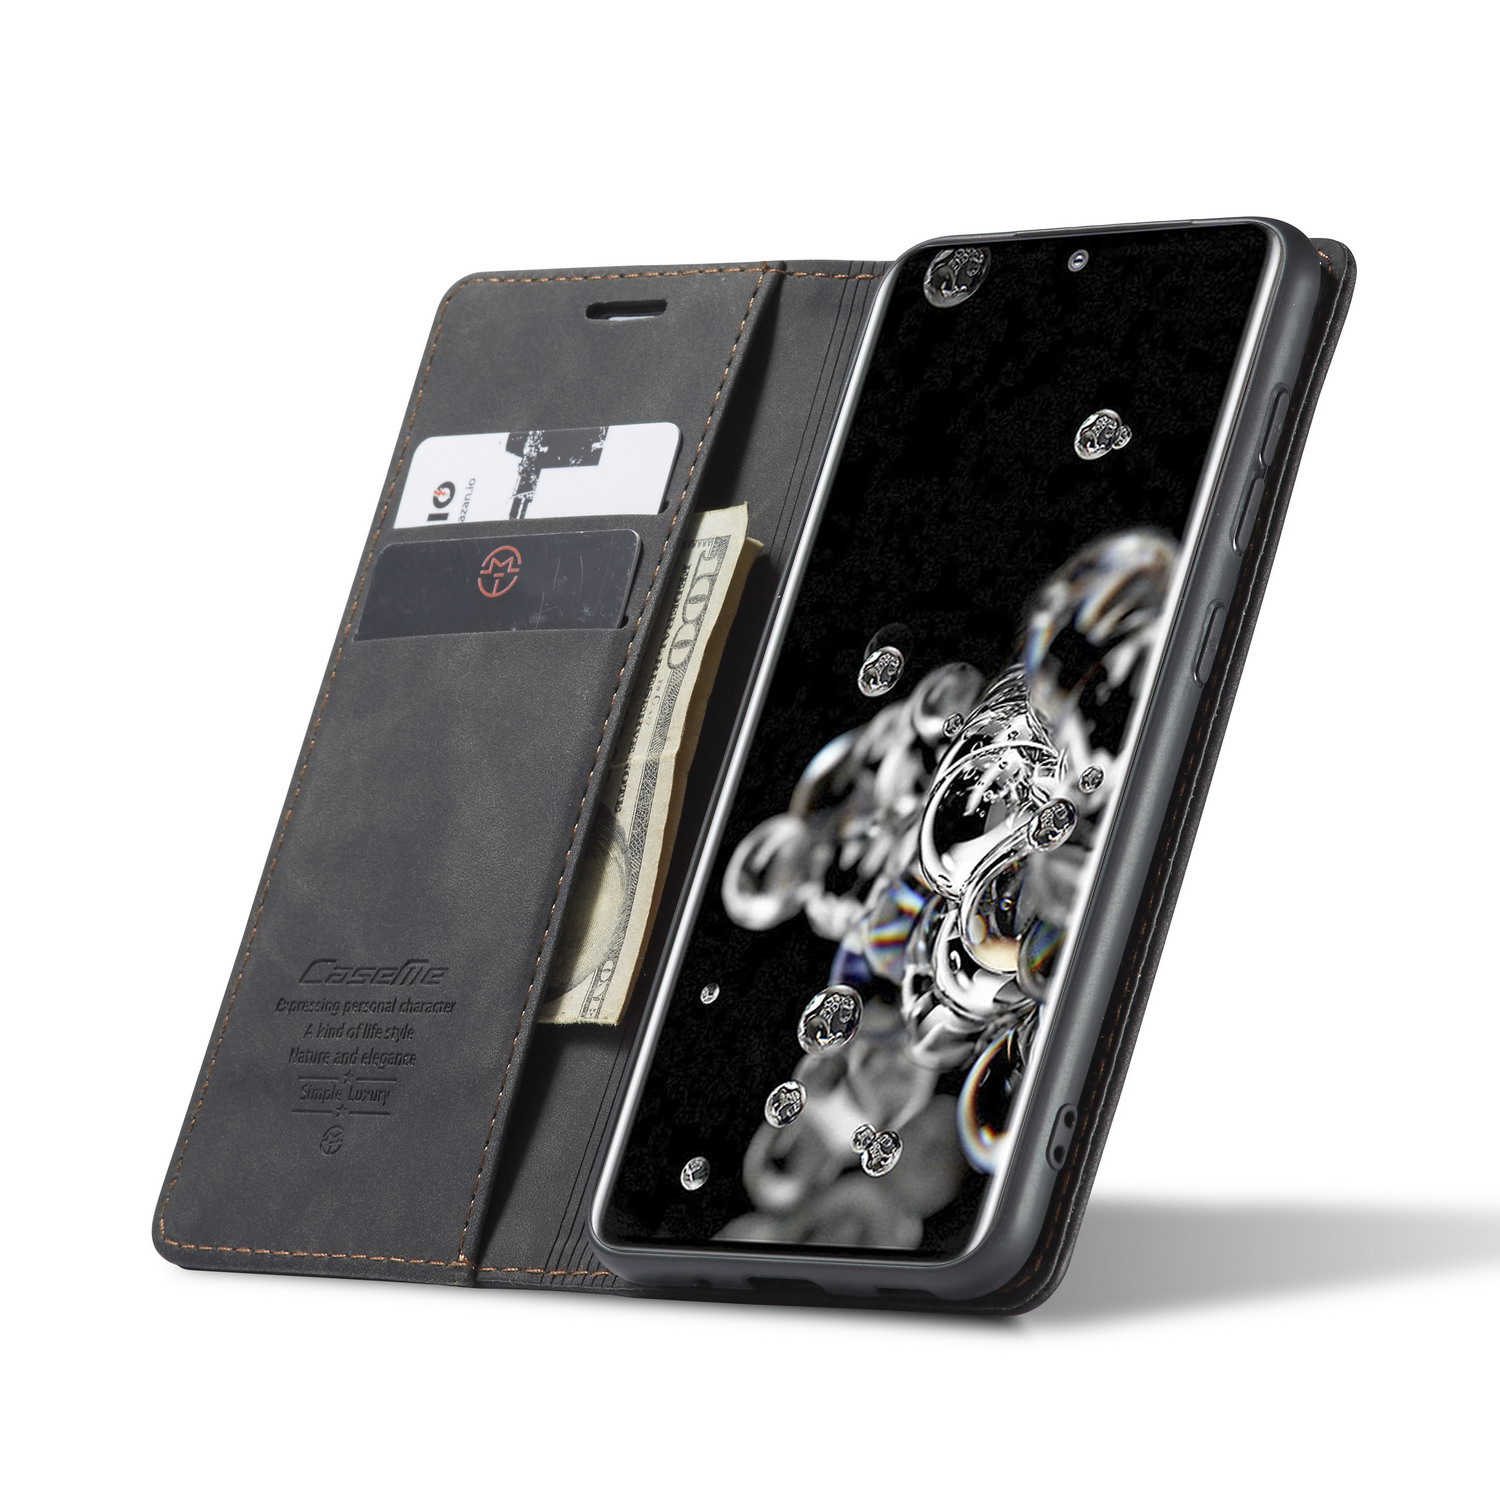 CaseMe plånboksfodral, Samsung Galaxy S20, svart